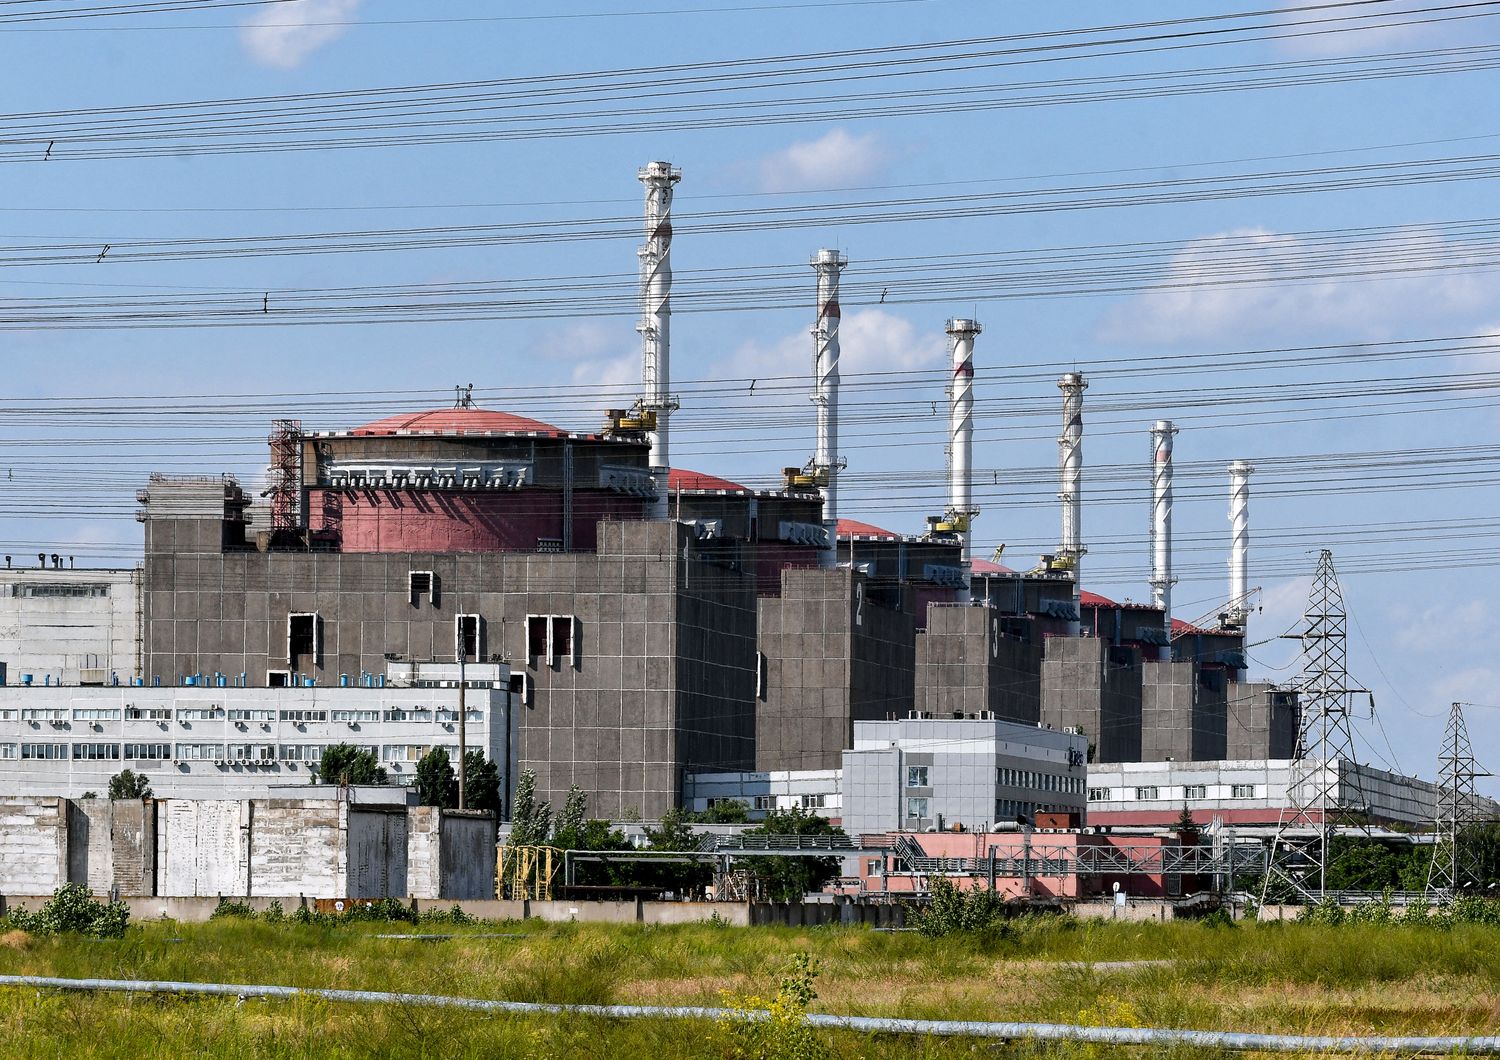 La centrale nucleare di Zaporizhzhia&nbsp;